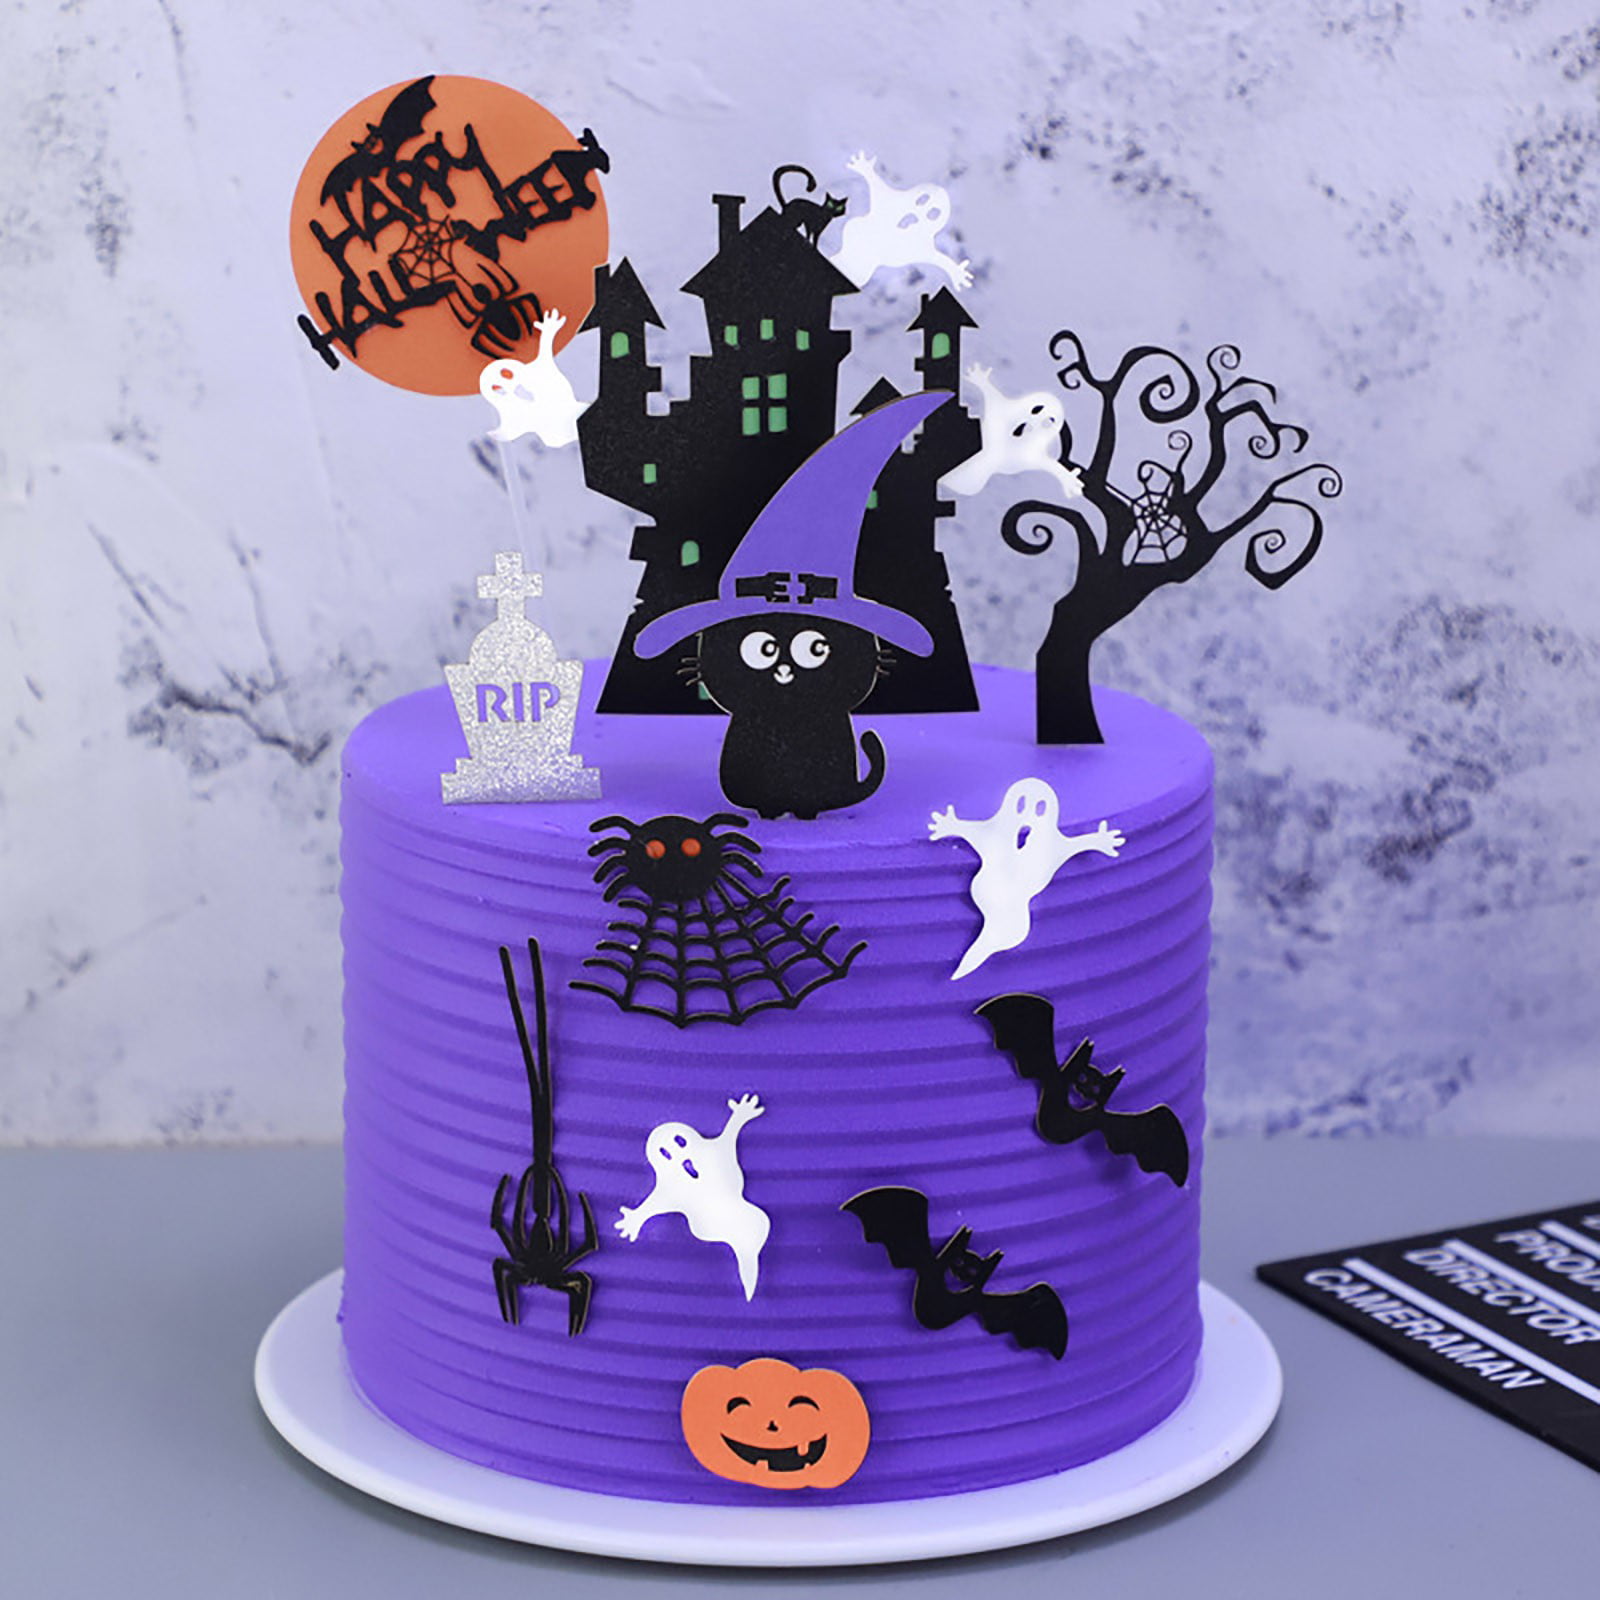 Toyfunny Halloween Cake Decoration Haunted House Cake Decoration ...